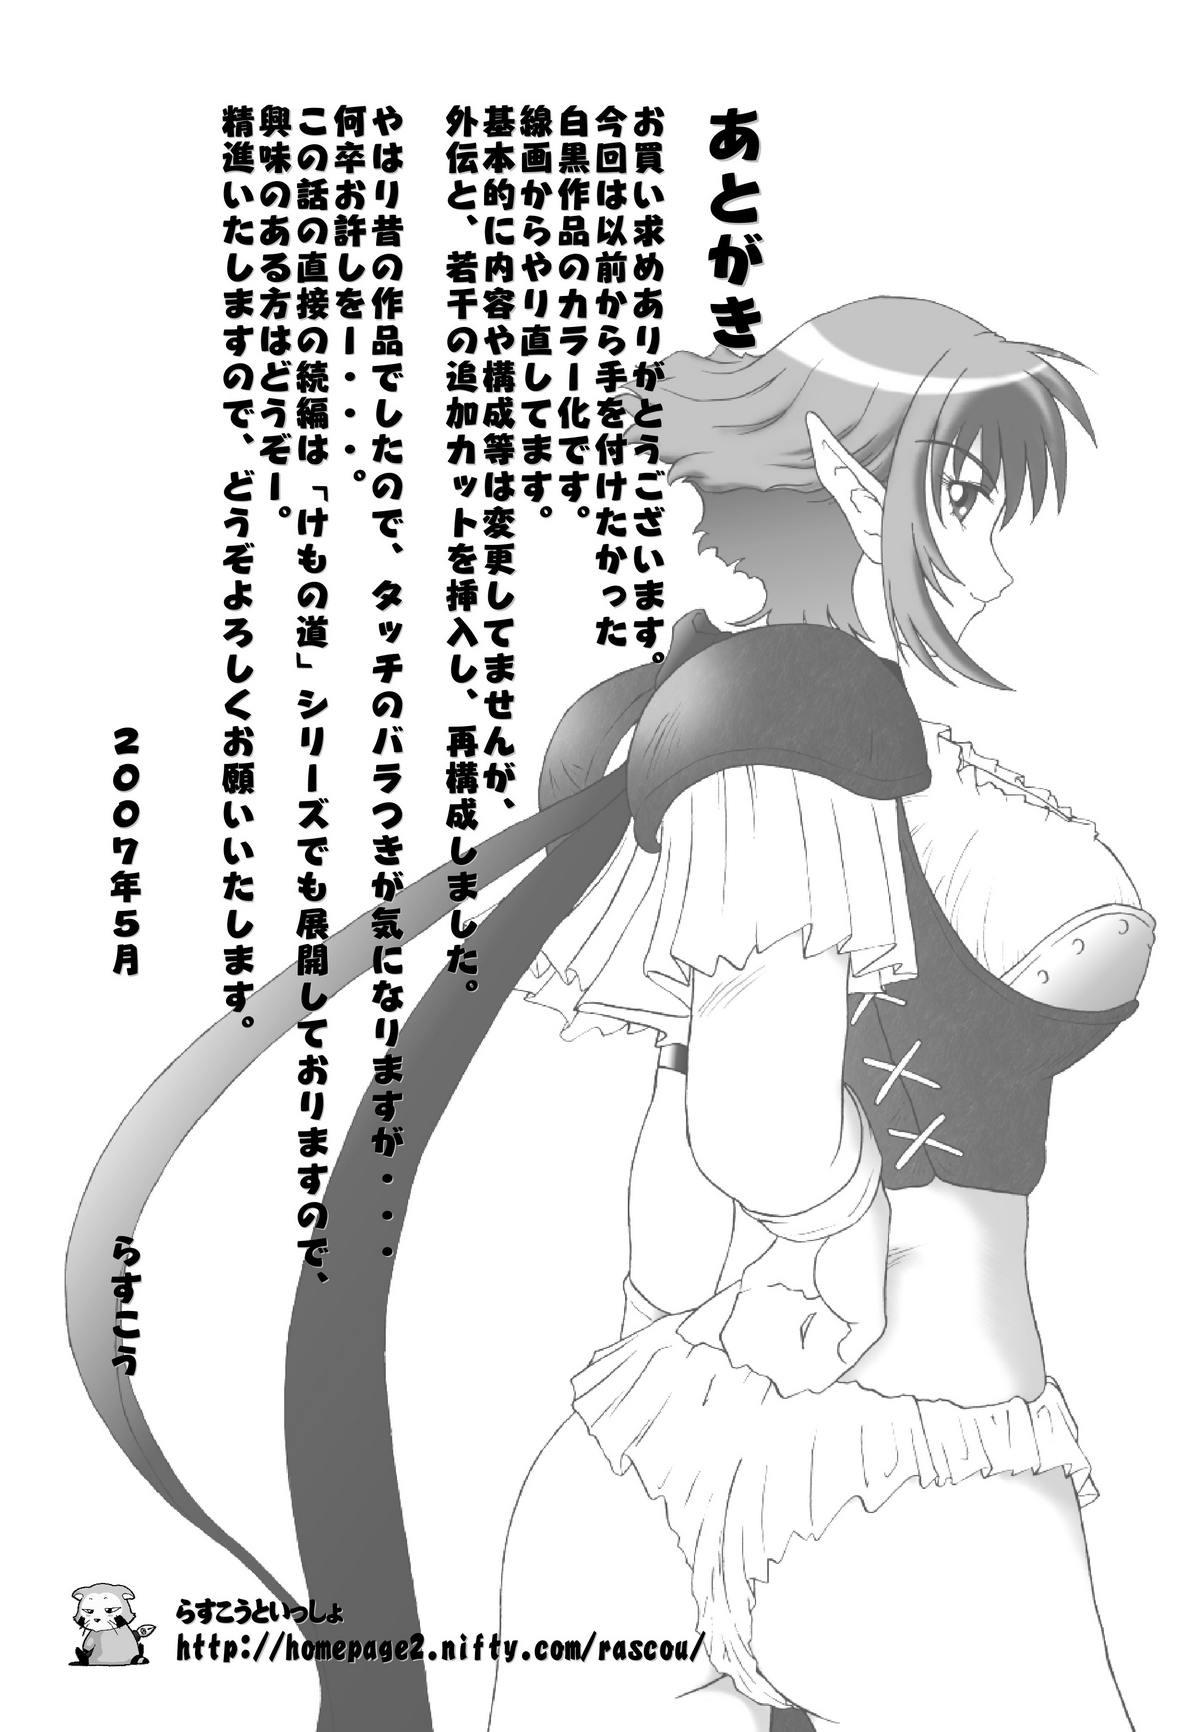 Gaybukkake Hanamichi Azemichi Vol. 2 "Tsuyokute mo On'nanoko Nandaka-ra" - Viper rsr Atm - Page 27